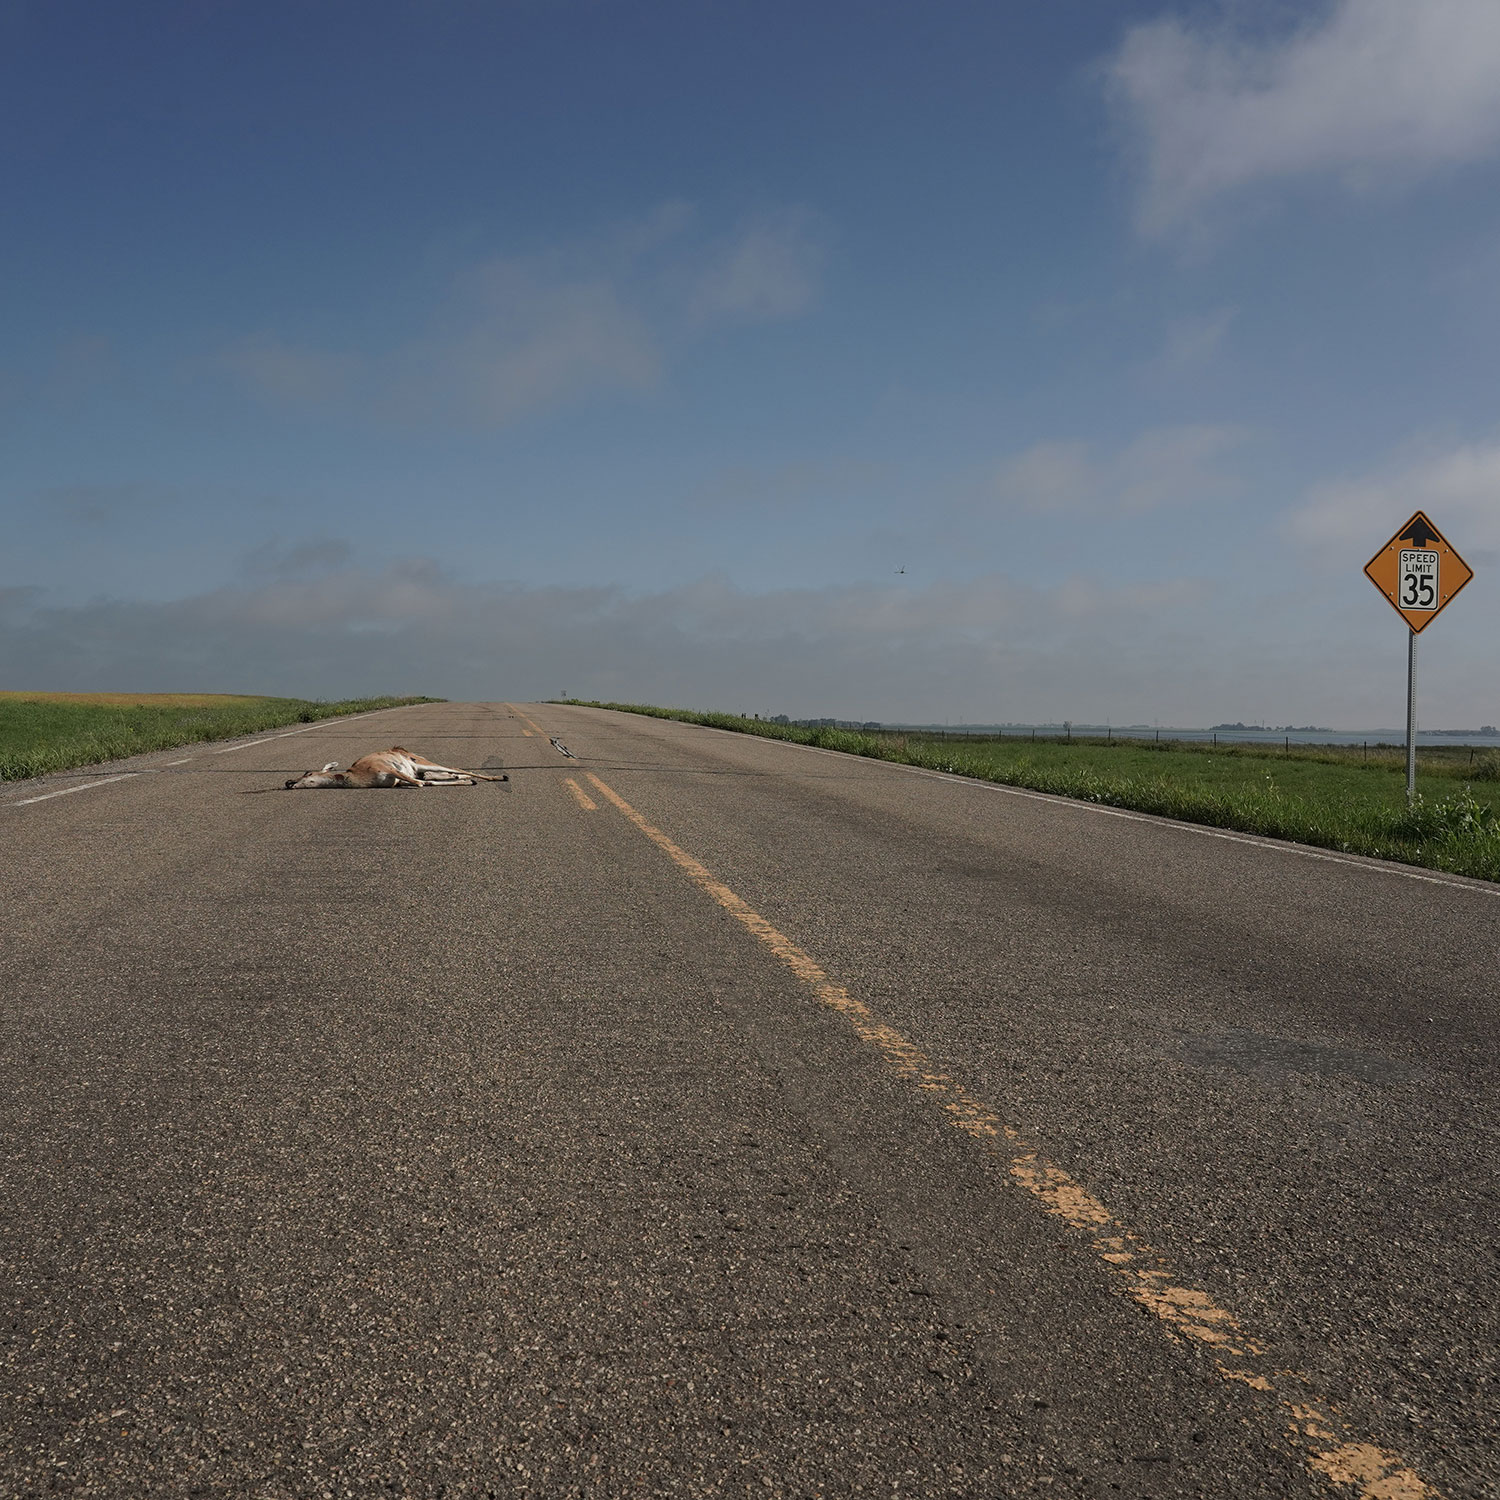 Dead deer on road